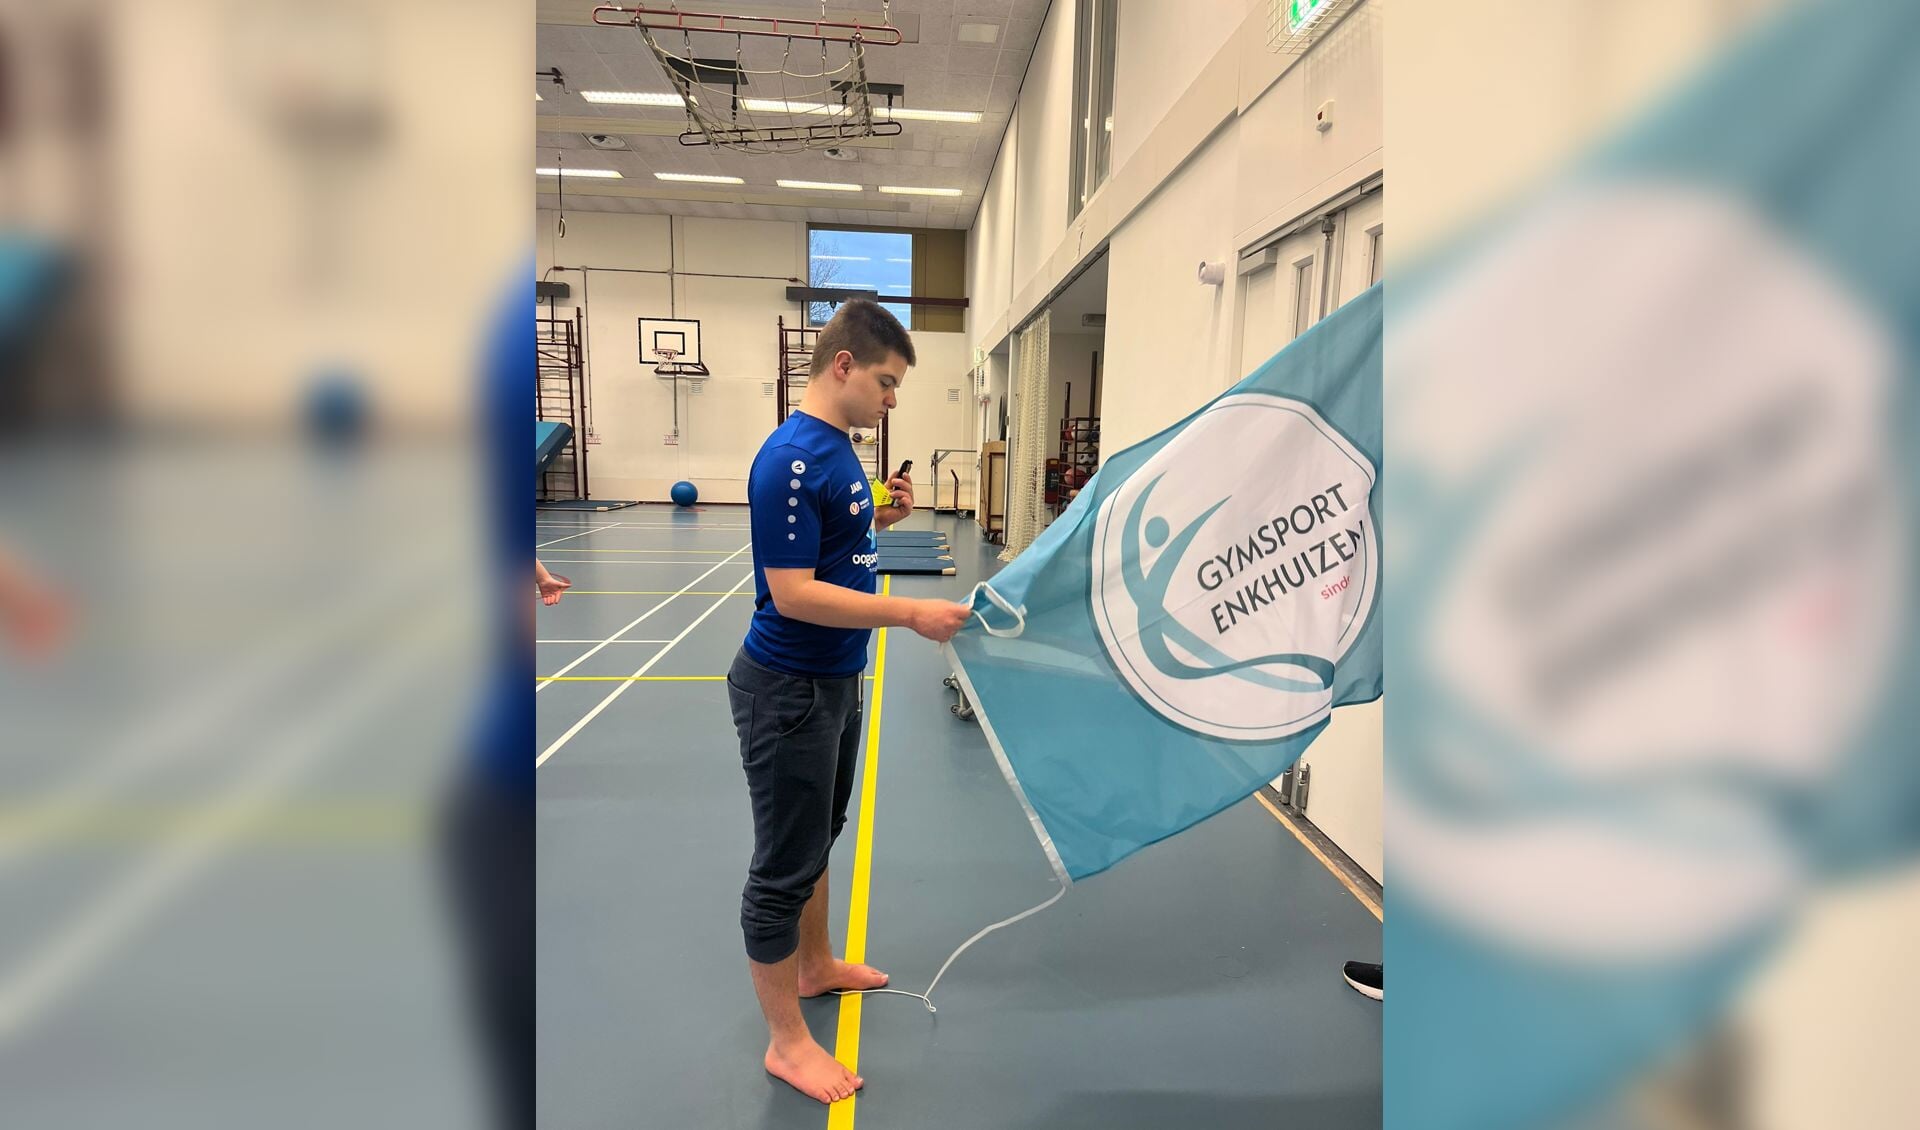 Lennon Bos uit Lutjebroek is uitgeroepen tot sporter van de maand bij Gymsport Enkhuizen.